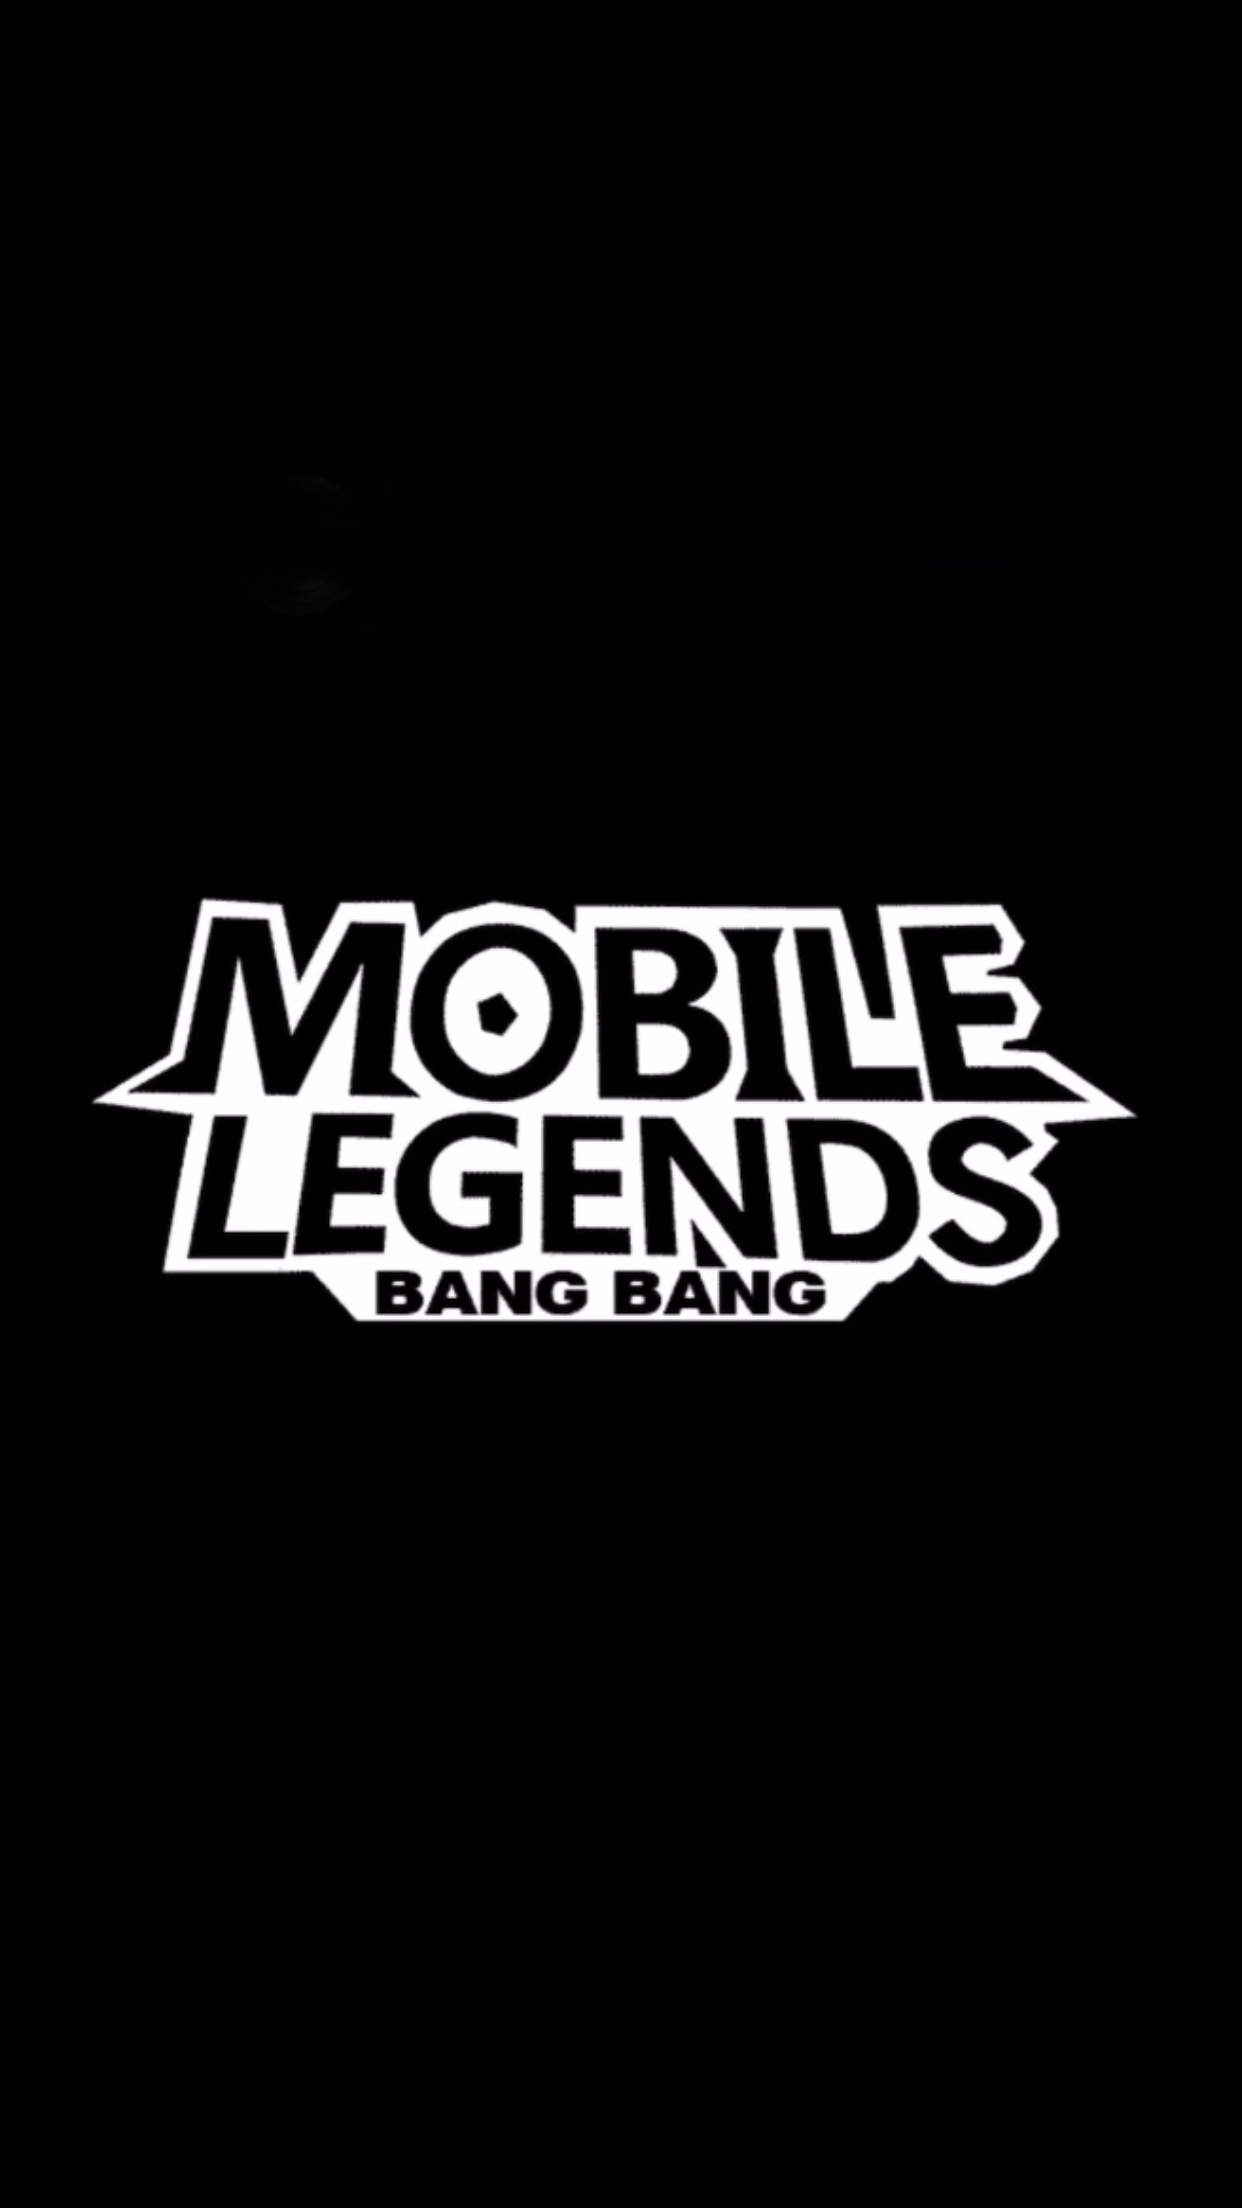 Legends Logo - Mobile legends logo png 6 PNG Image